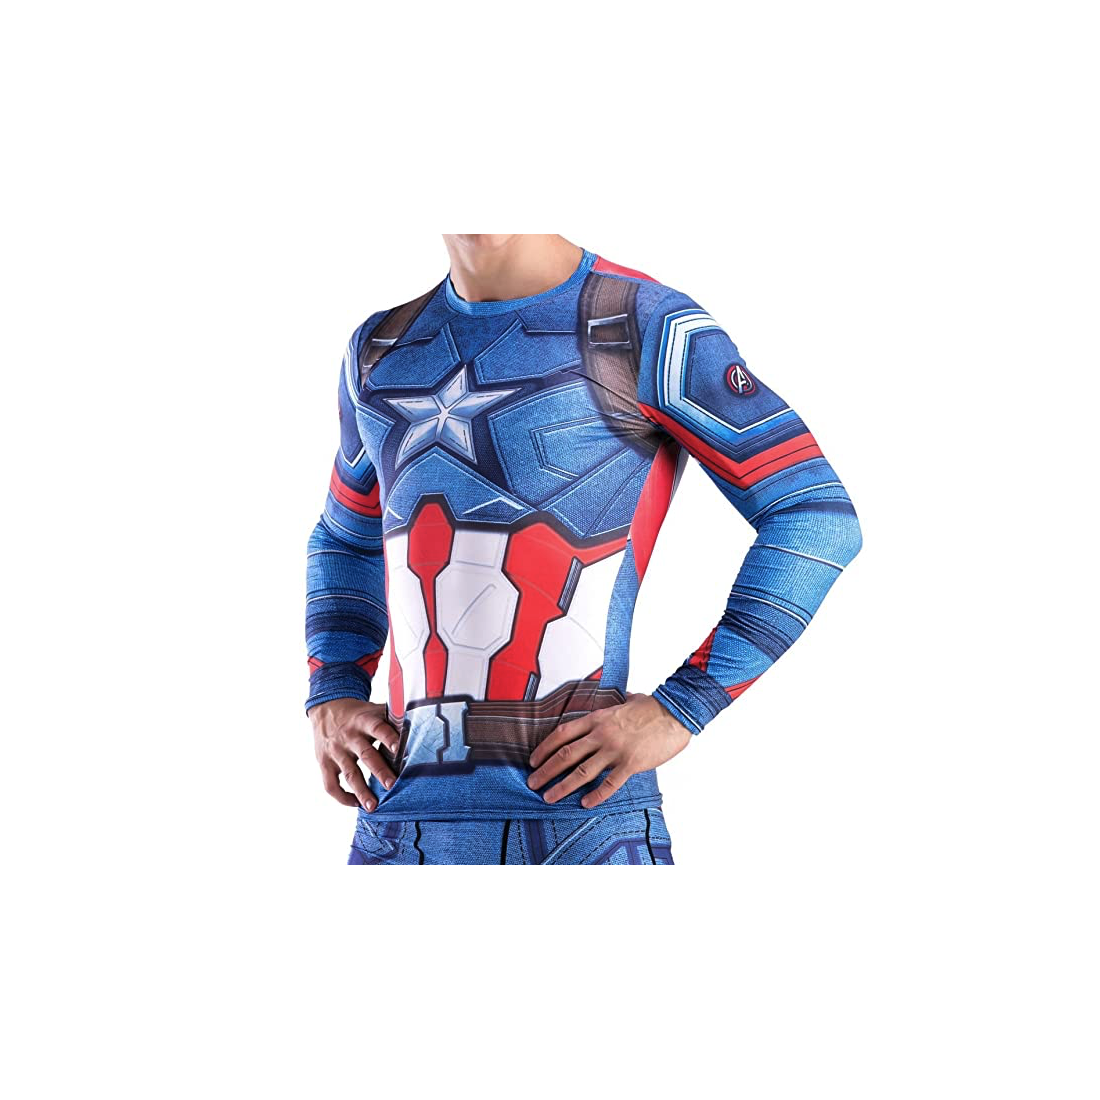 T-shirt compression Homme Captain America, 3D Tops Rashguard Musculation,  bleu-multicouleur, manches longues. Taille Adulte M